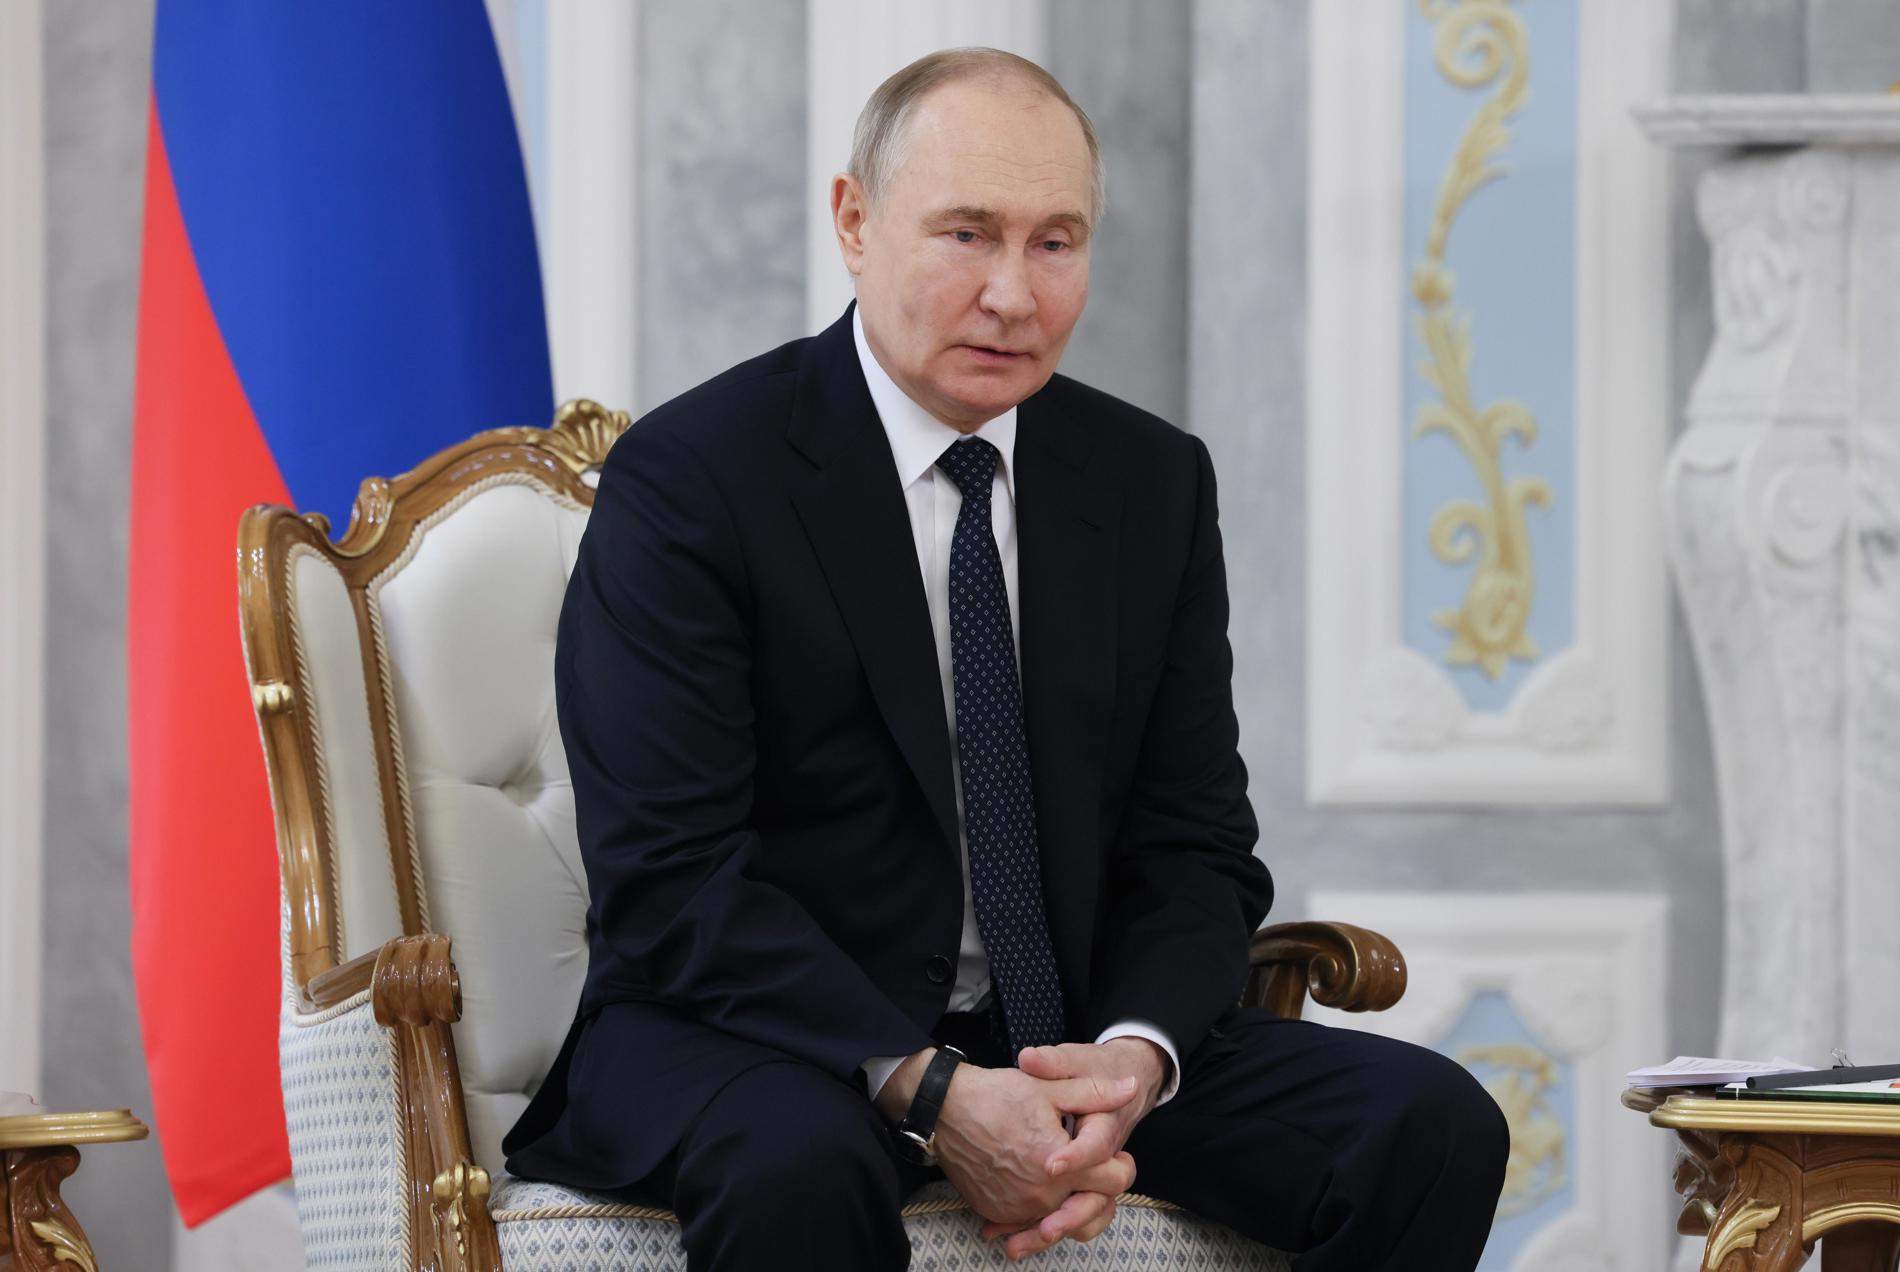 Per què Putin està obert a aturar la guerra si Occident reconeix les fronteres actuals?